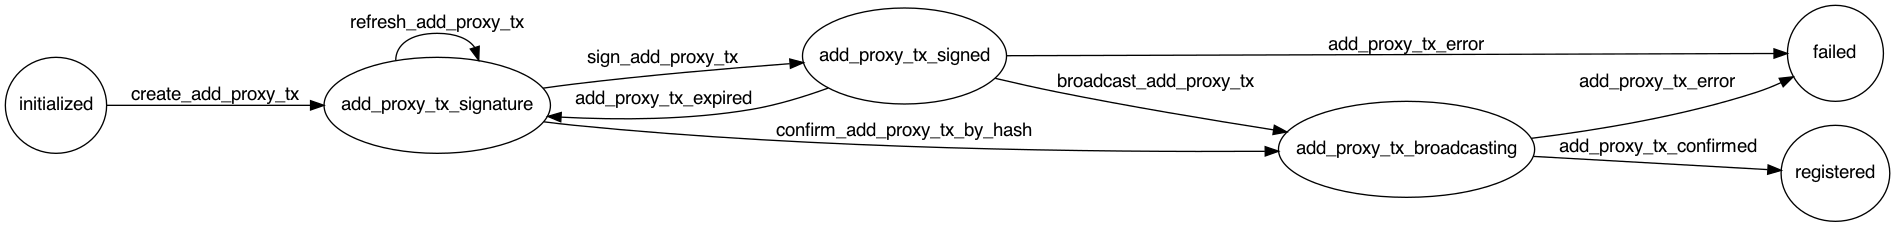 Polkadot Add Proxy Flow Diagram